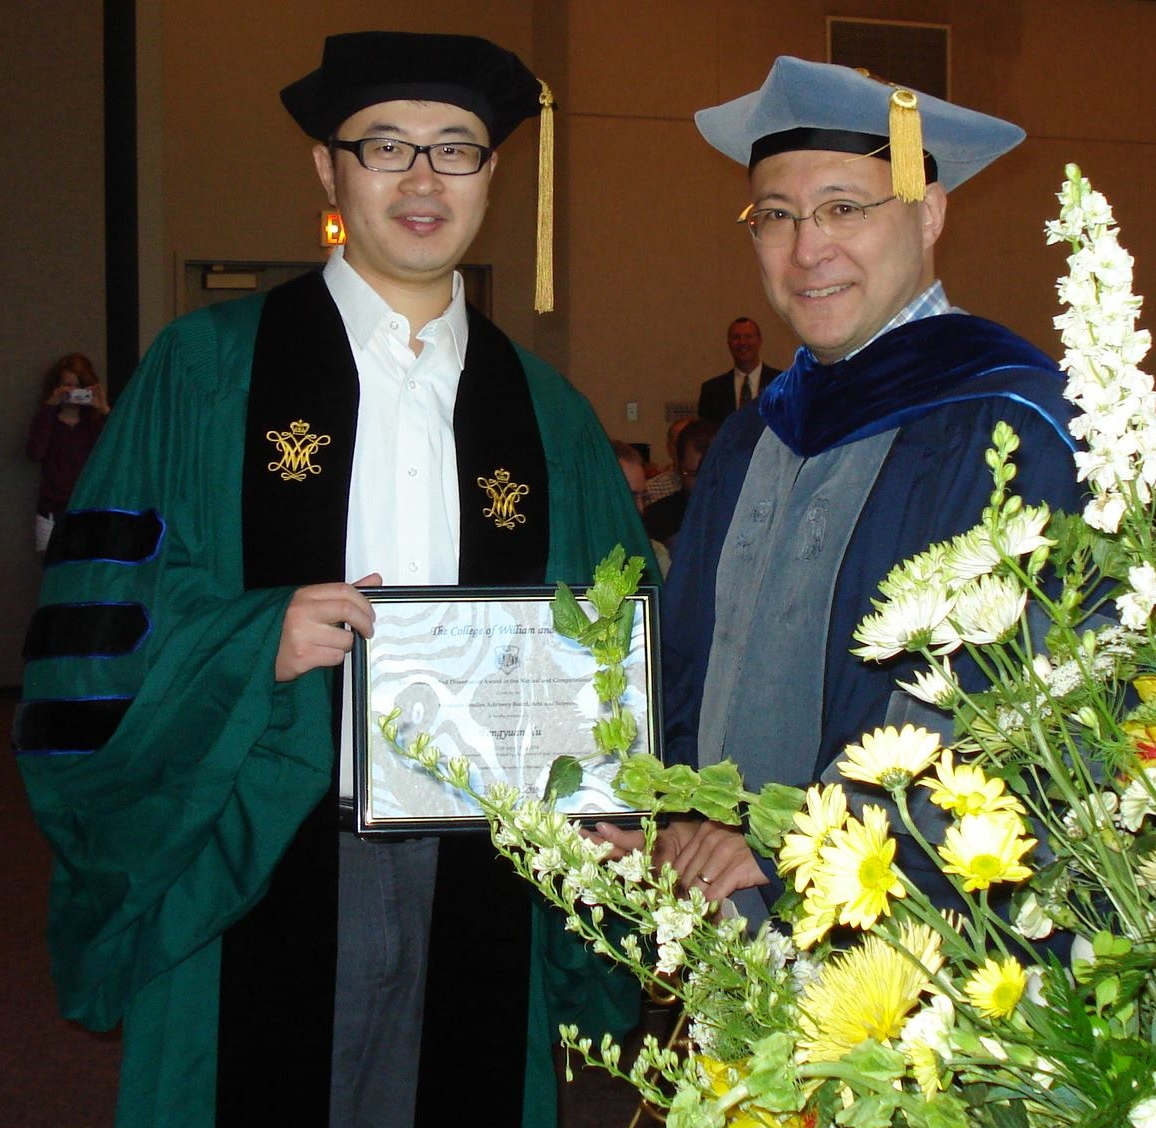 Fengyuan Xu receiving the Award